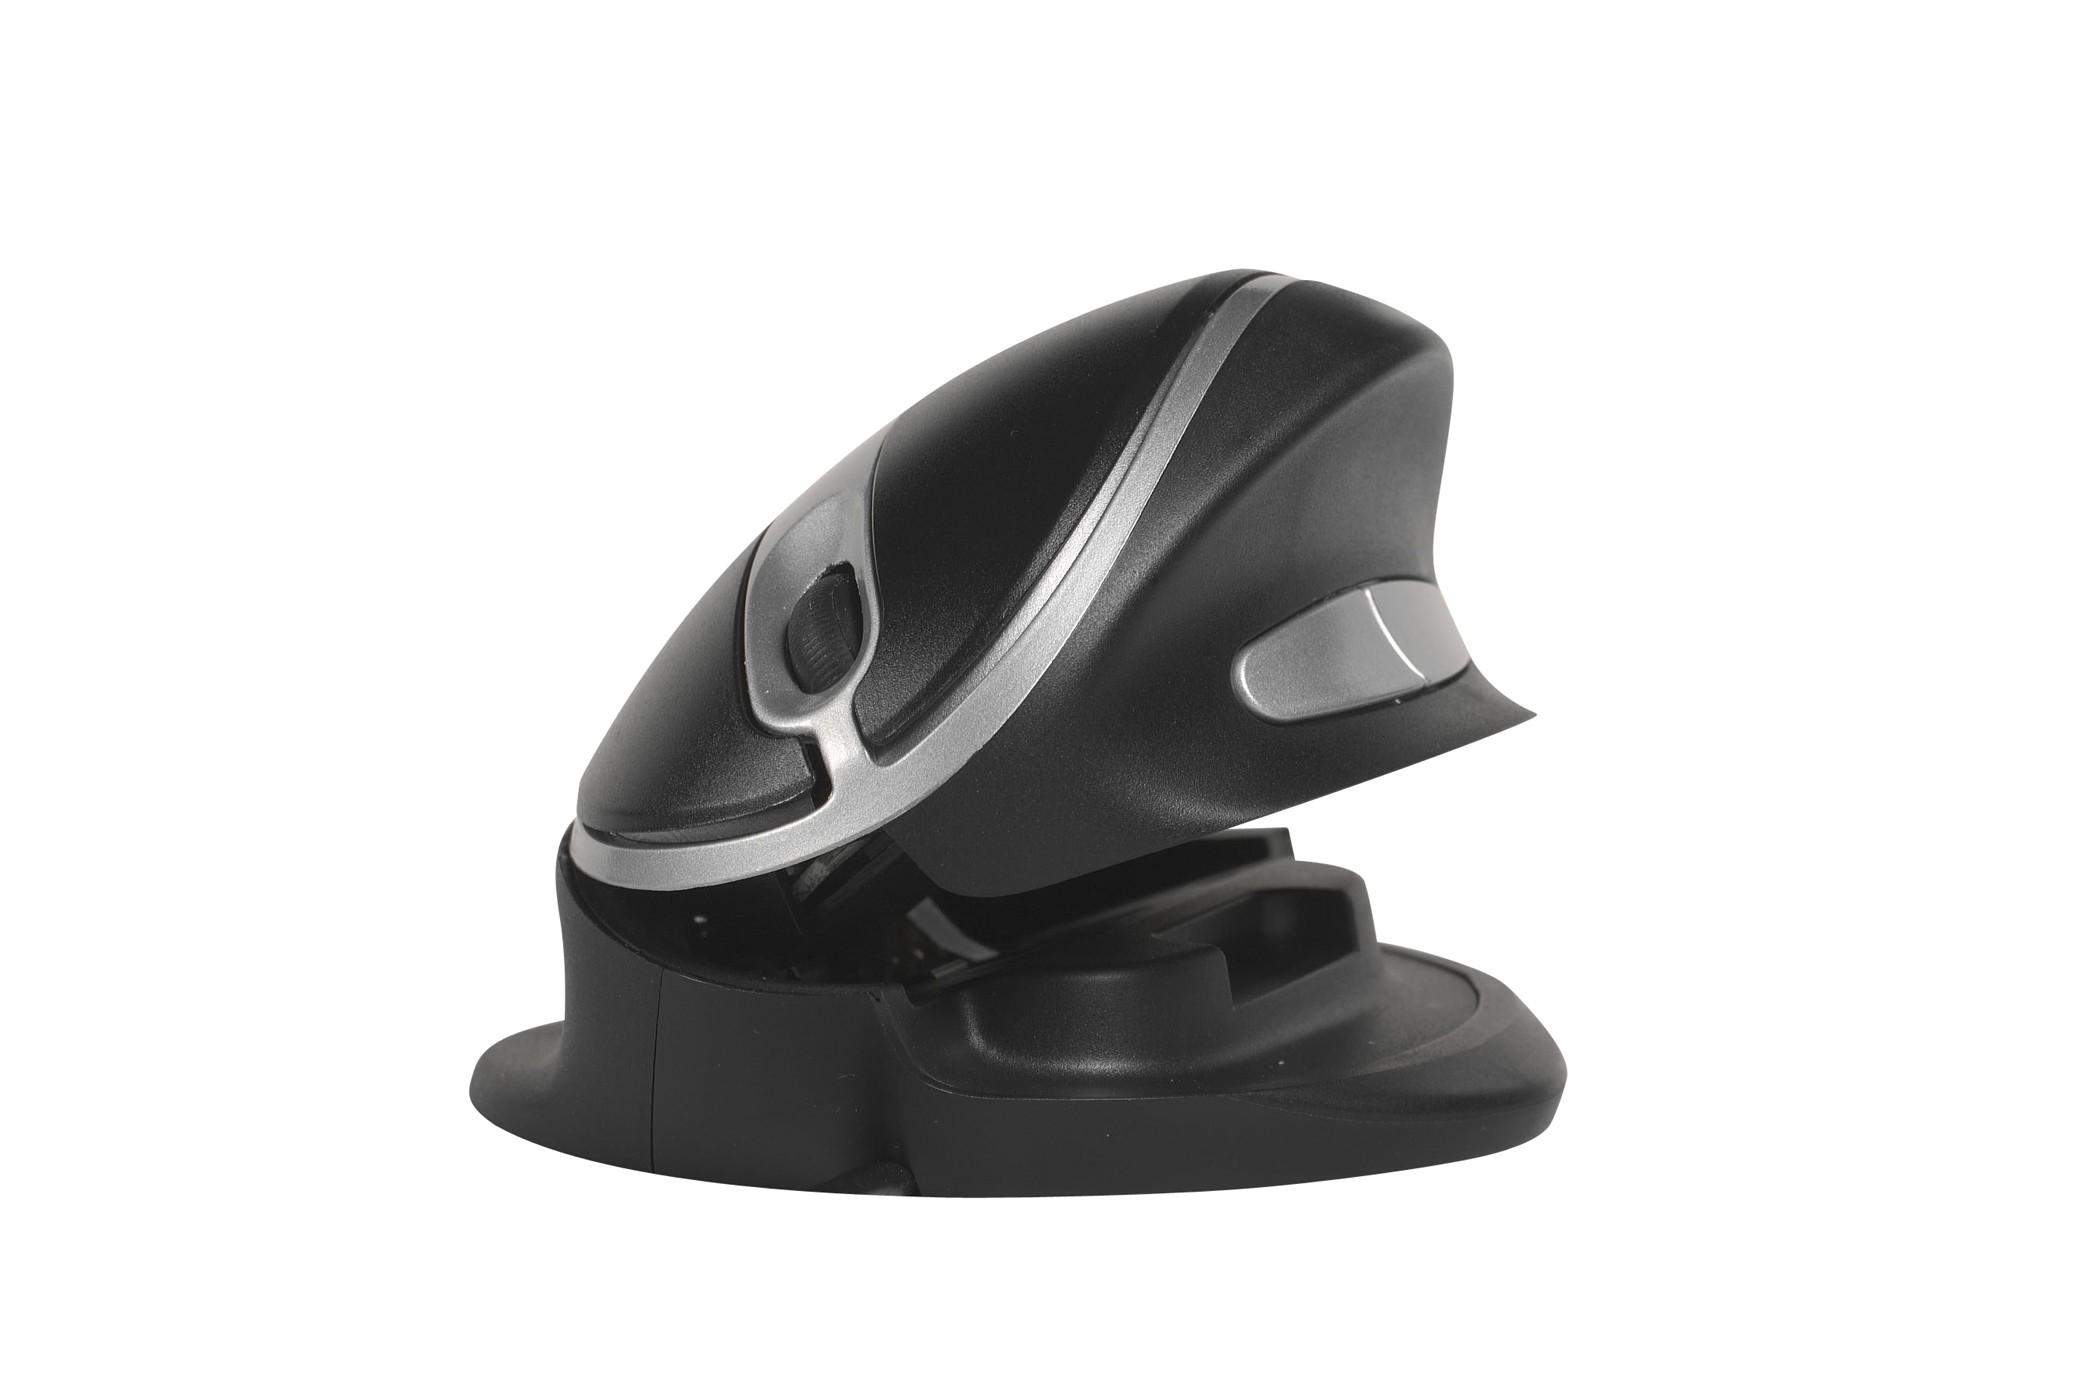 Souris ergonomique Oyster Mouse sans fil - 2